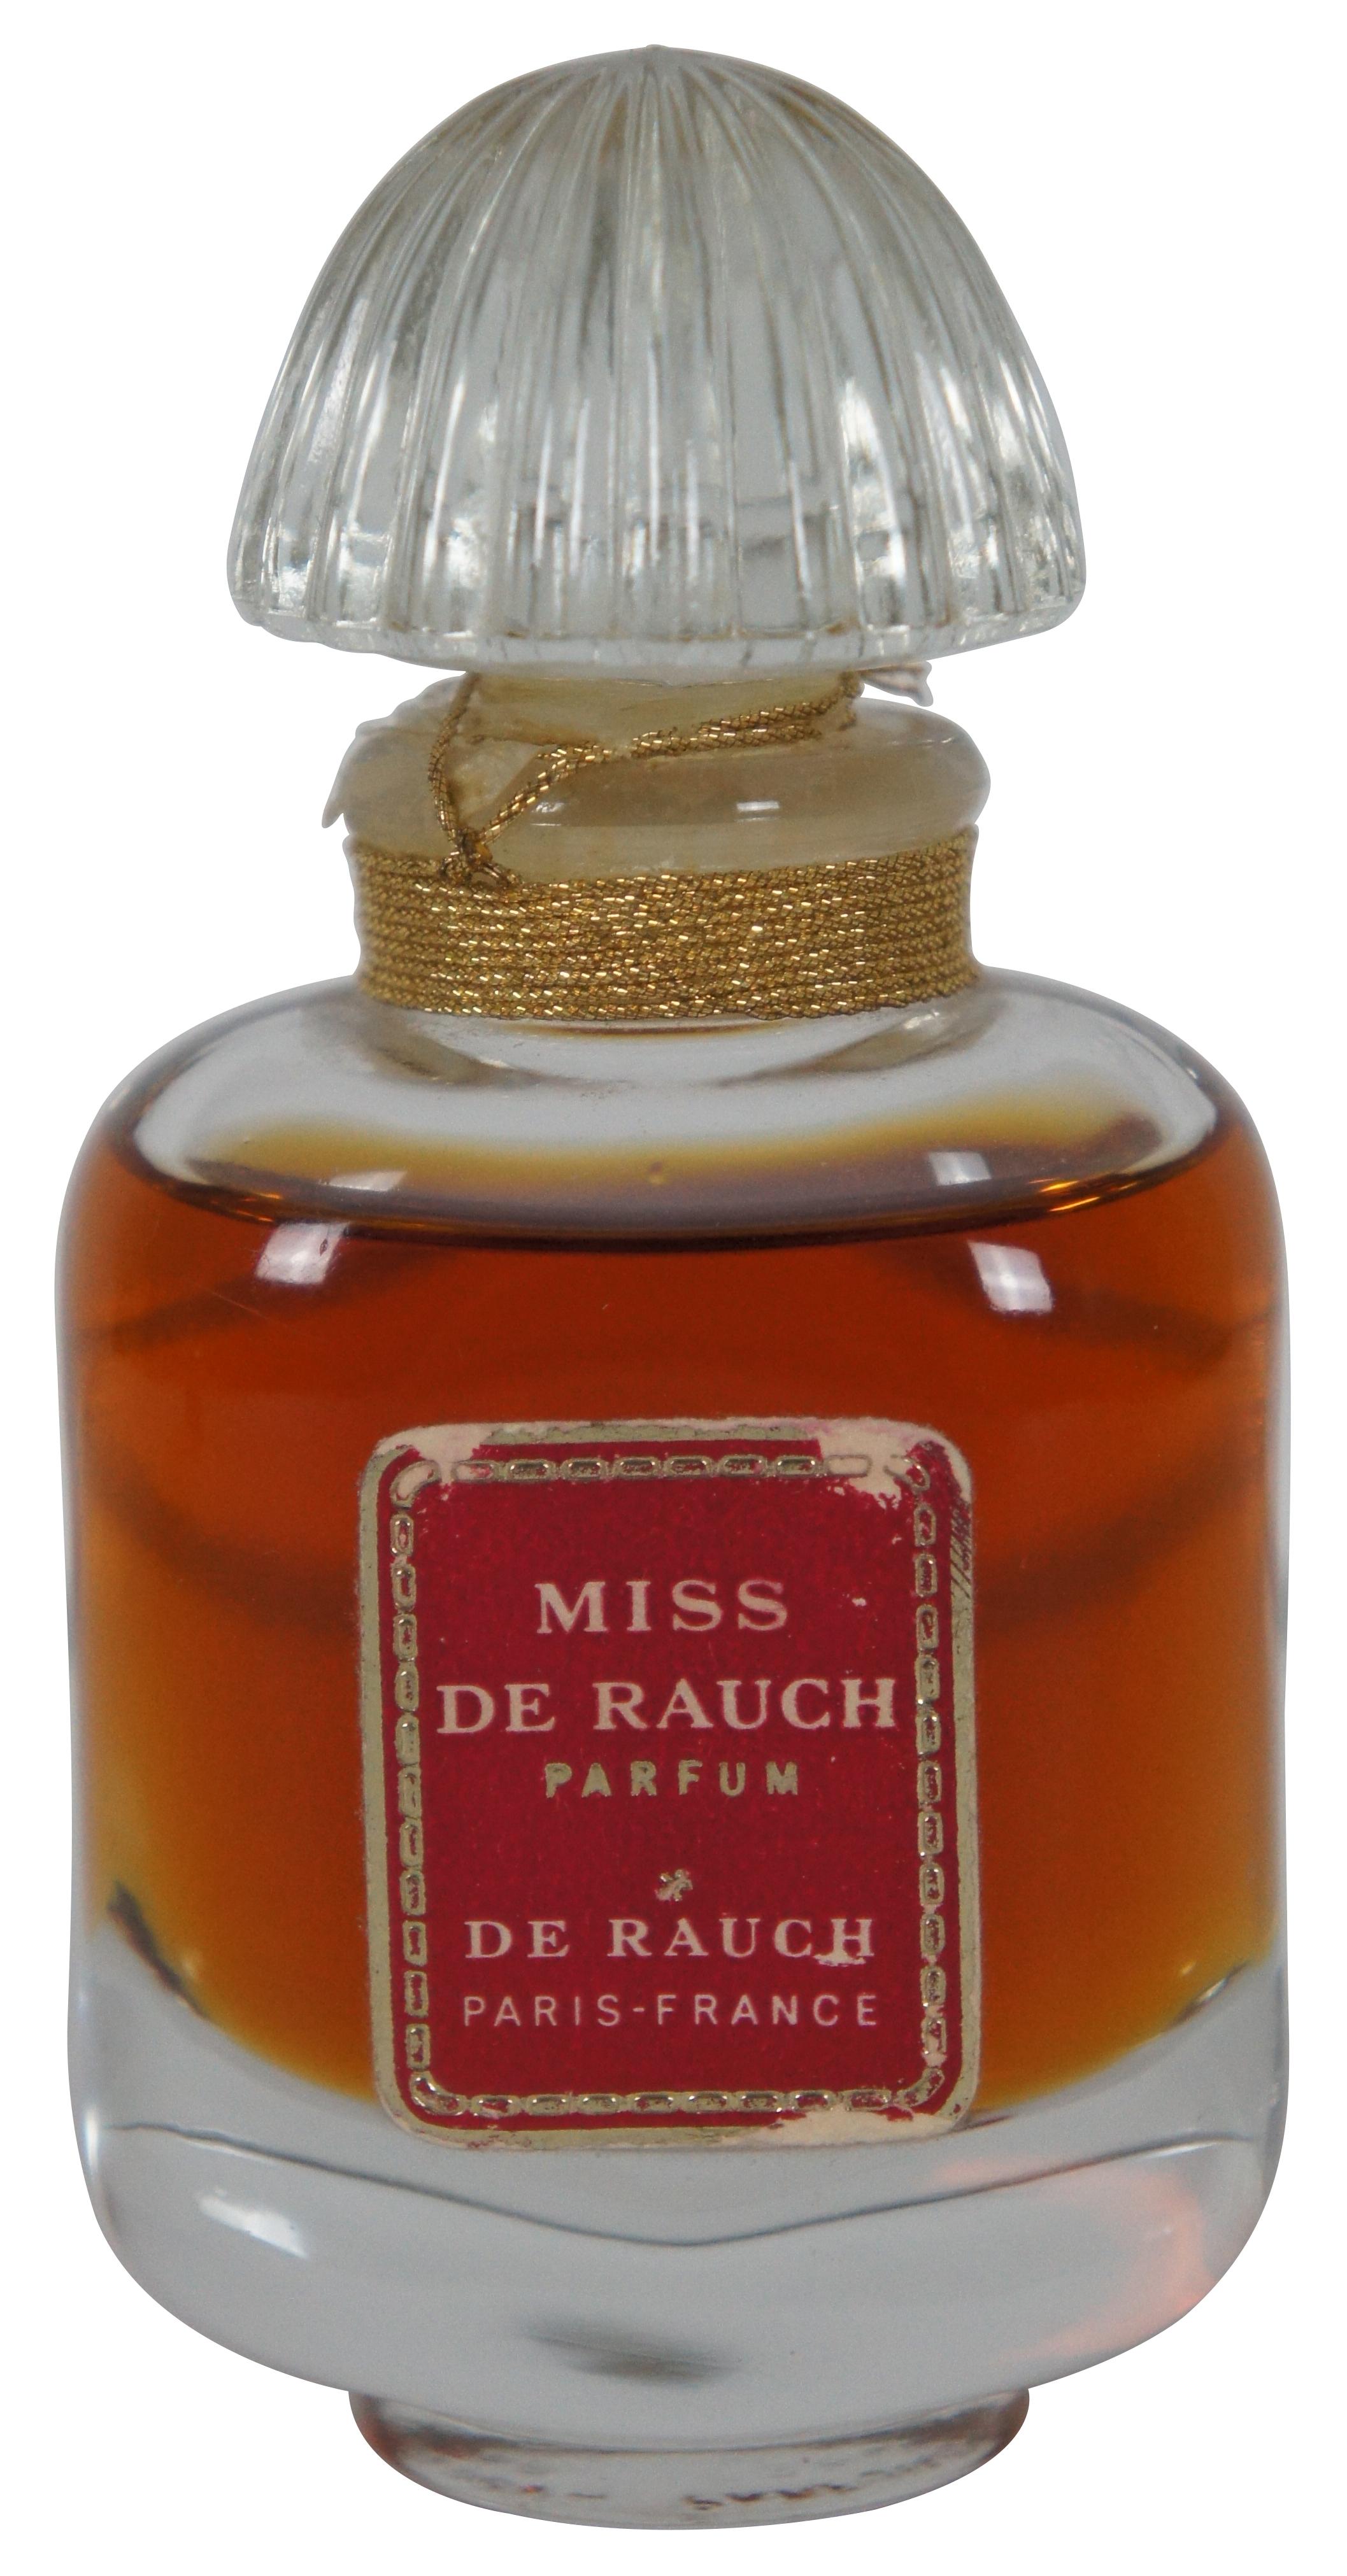 Lot de trois parfums vintage des années 1960 - Miss De Rauch par De Rauch, Asghar Ali & Sons version Yves Saint Laurent, et Femme par Marcel Rochas.

Mesures : Mlle de Rauch - 1,75